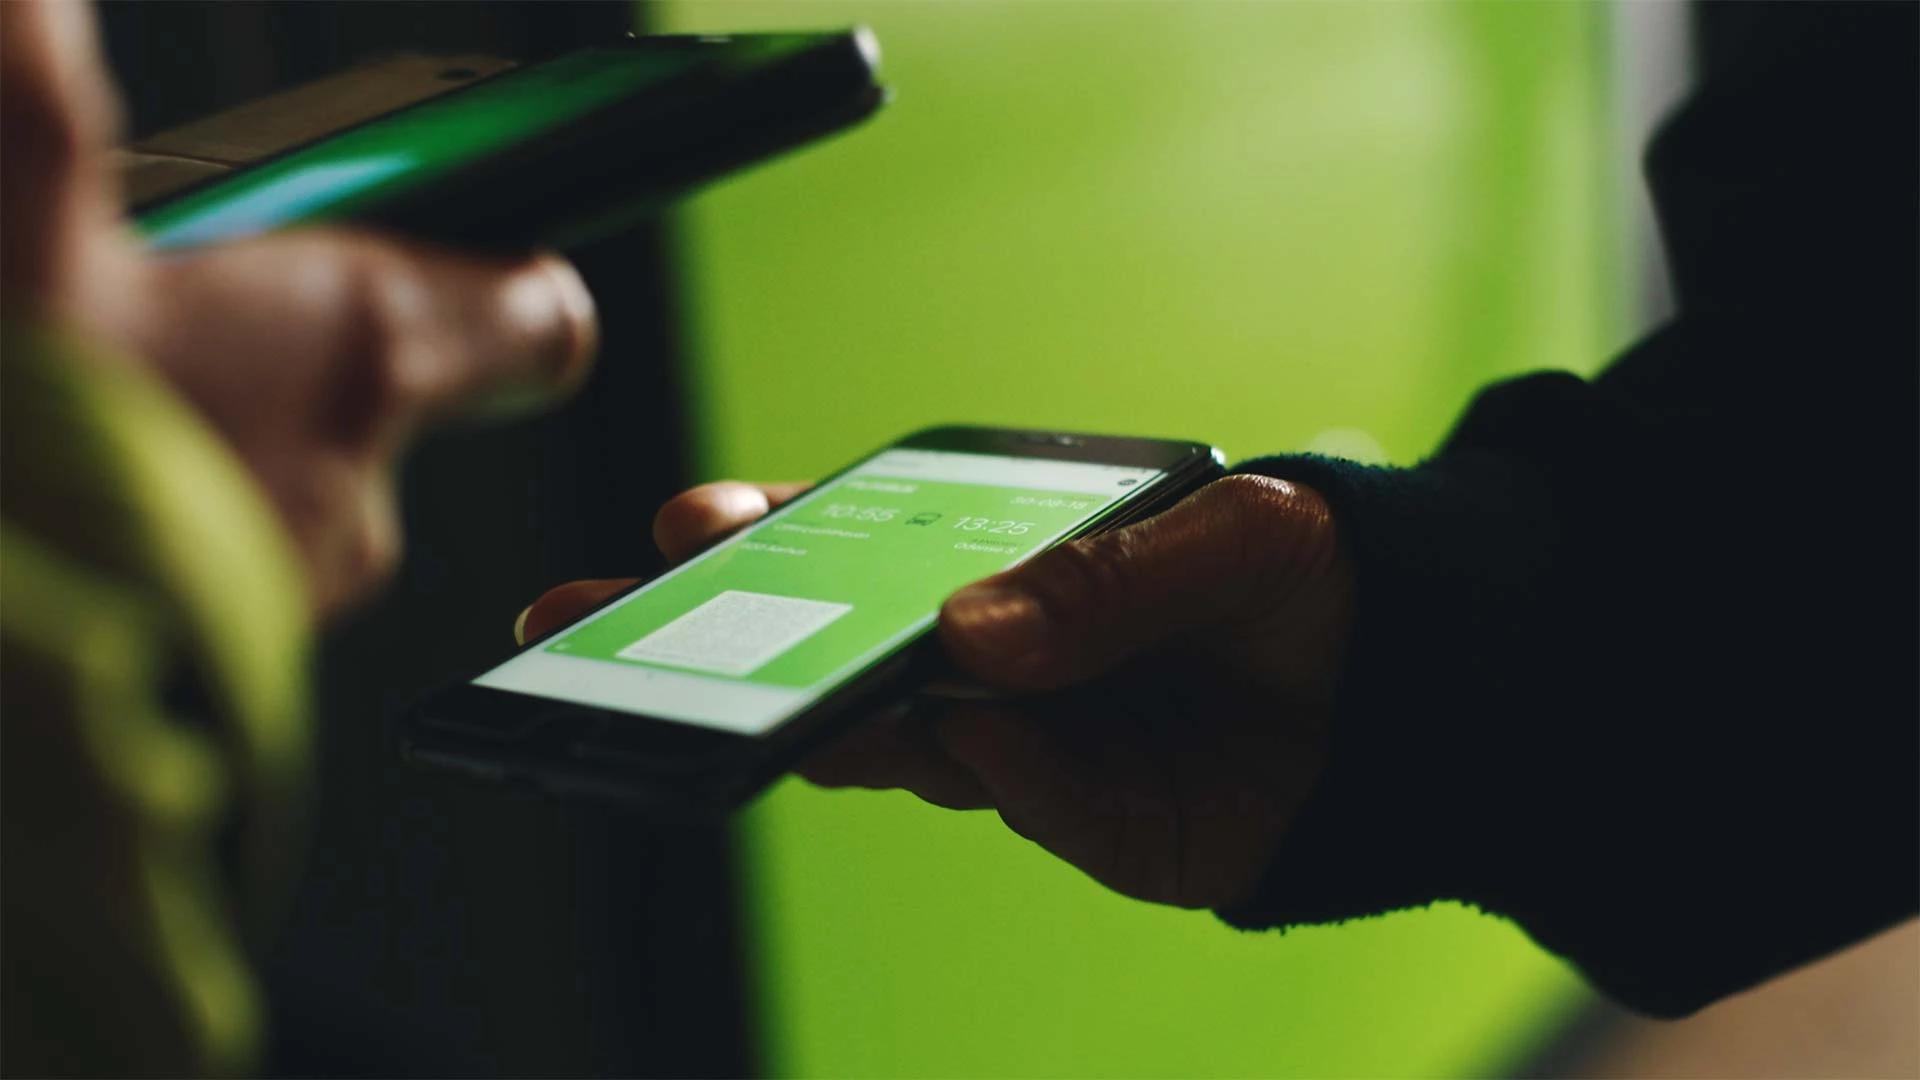 Passagererne bruger deres foretrukne betalingsmetode, når de skal betale hos FlixBus